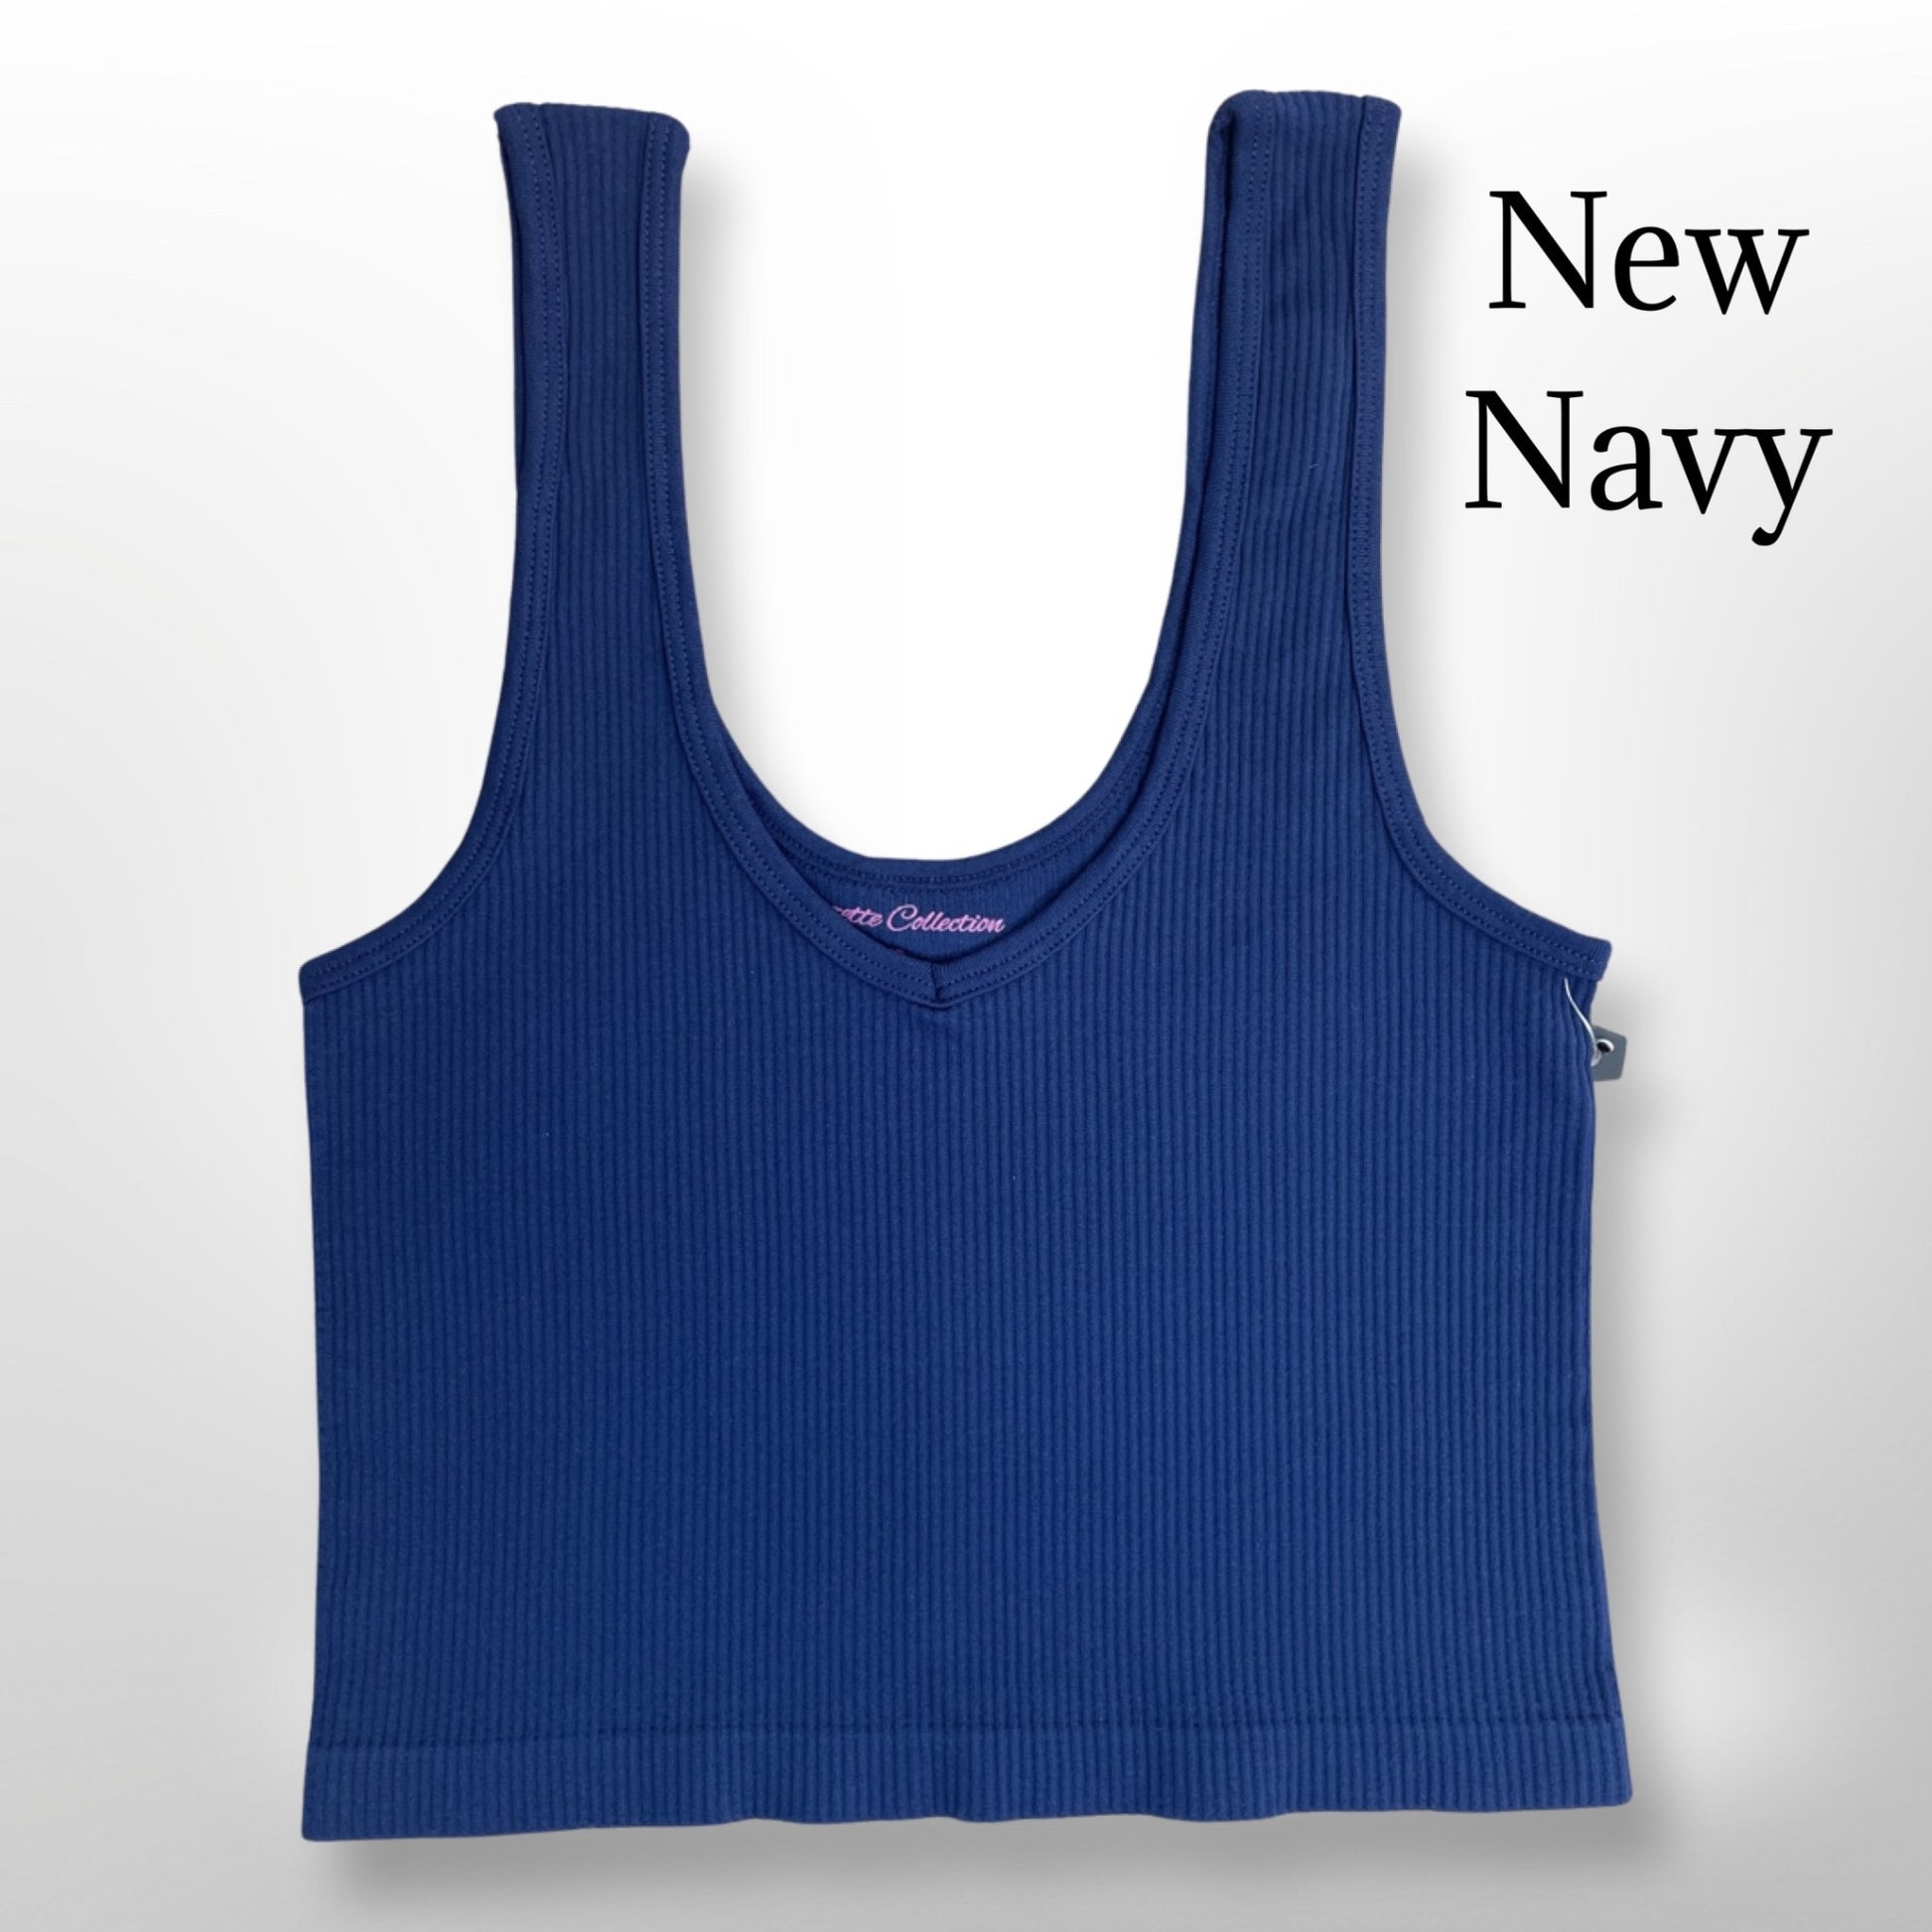 V-neck Ribbed Cropped Tank Brami New Navy Clothing